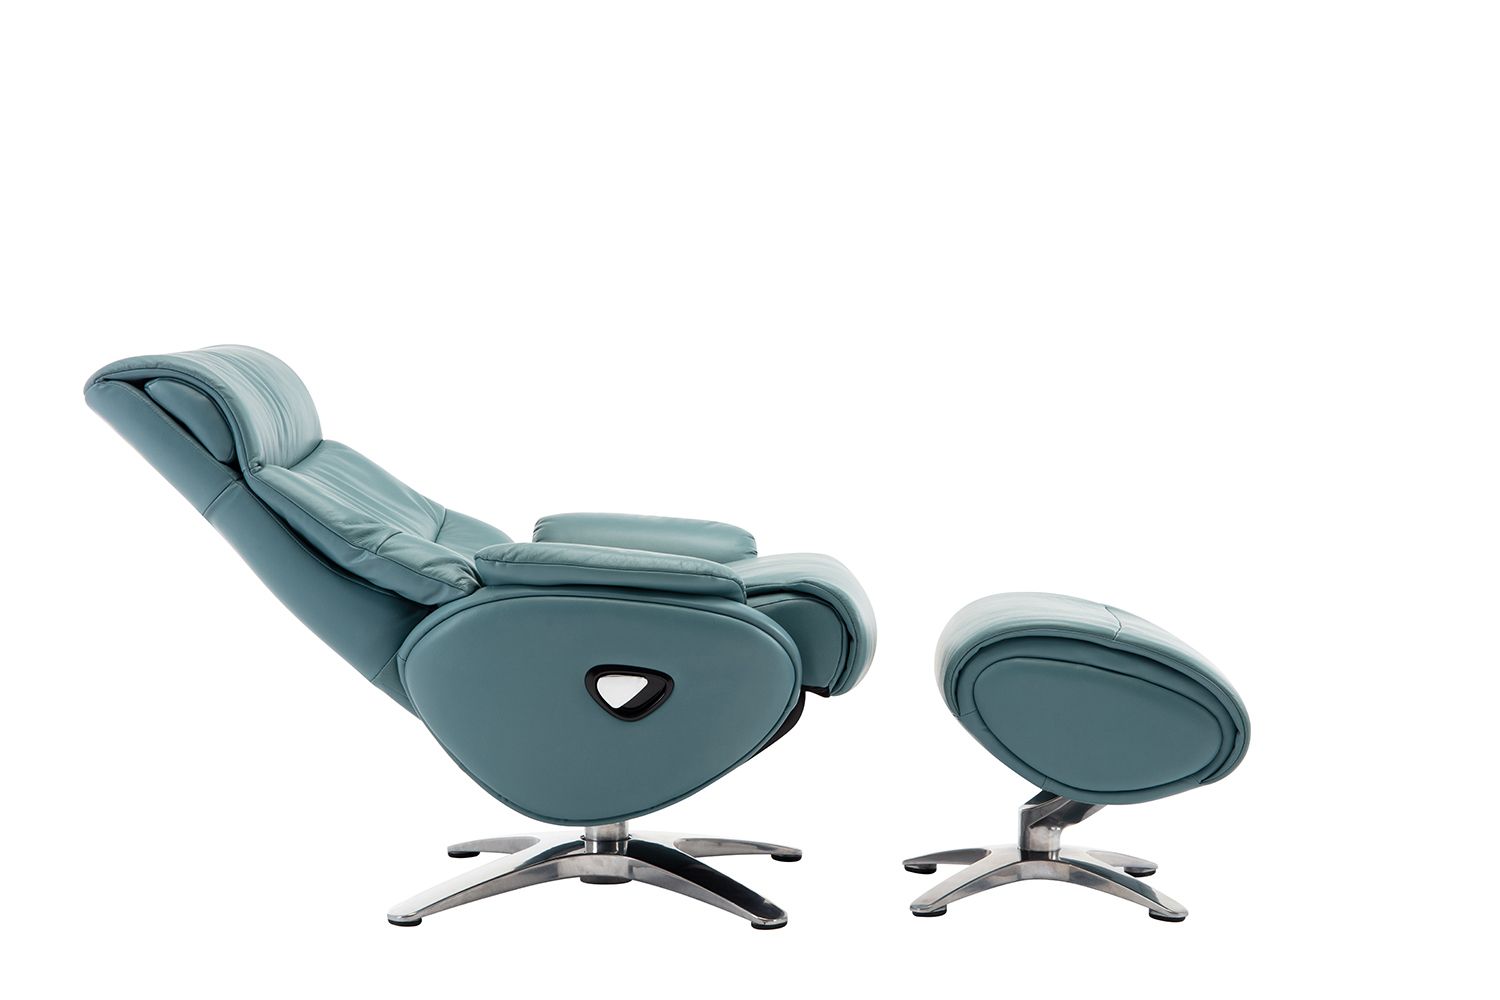 Barcalounger Adler Pedestal Recliner Chair and Ottoman - Capri Blue/Leather match